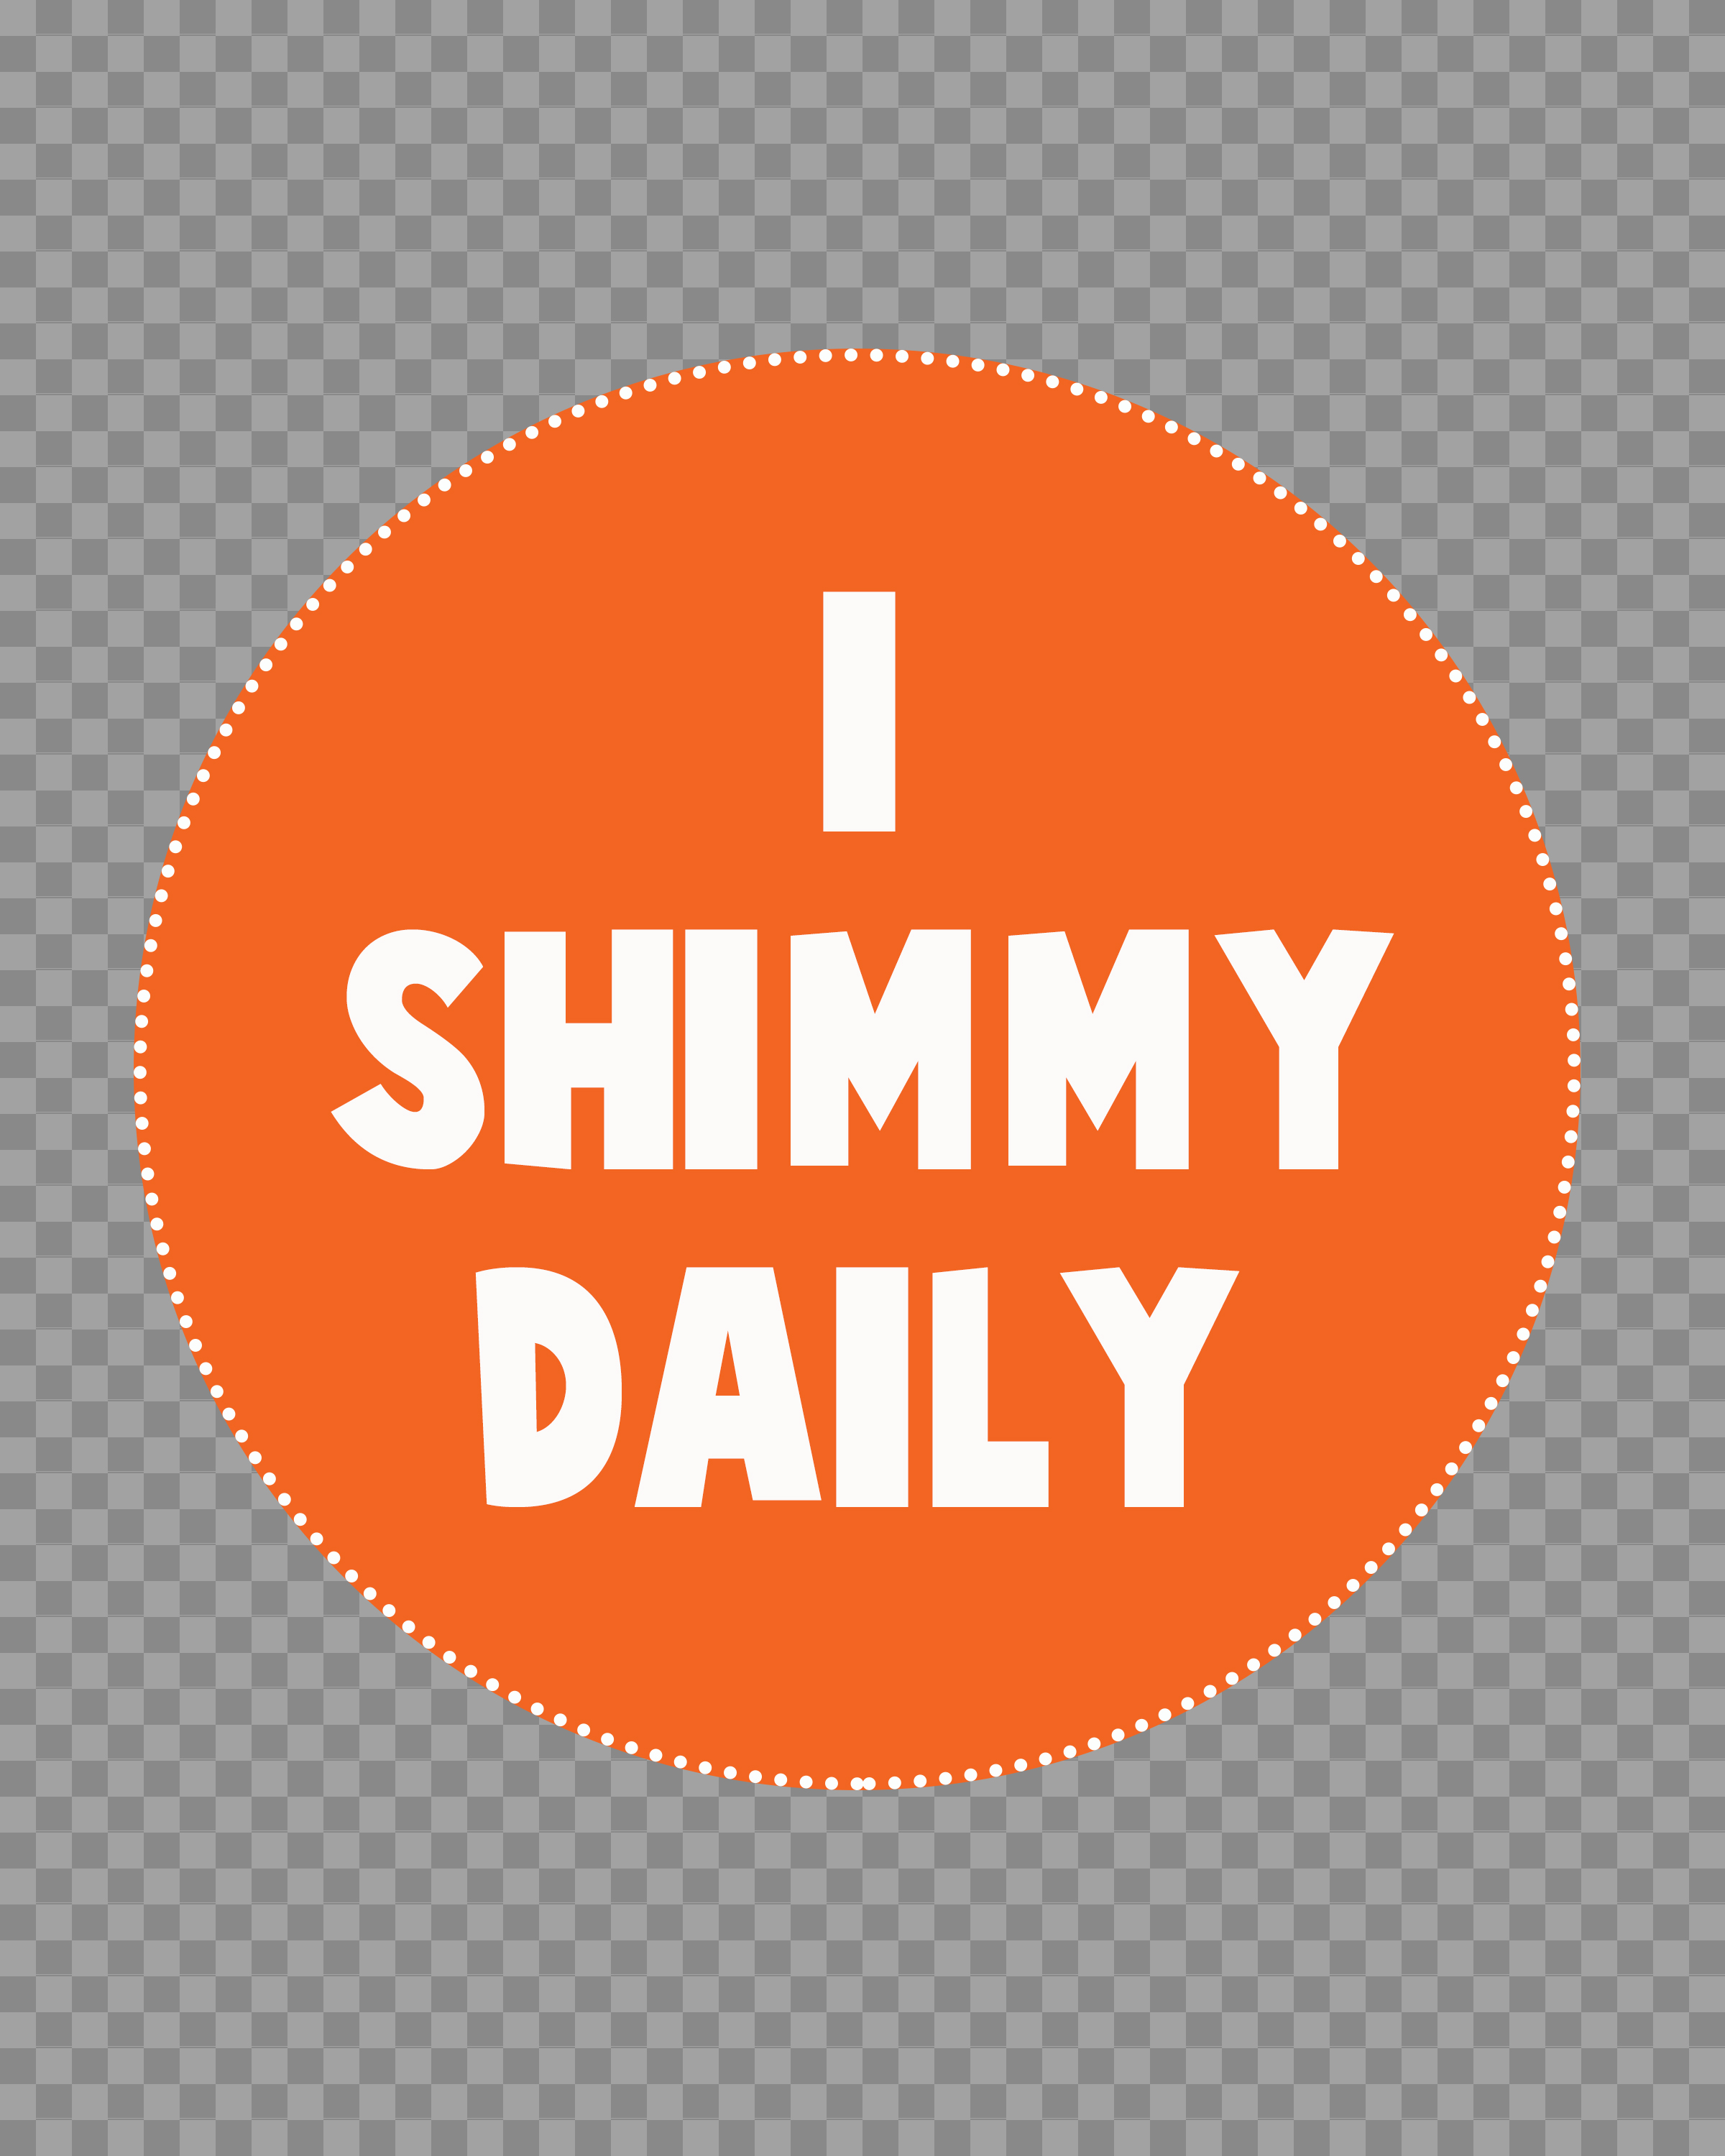 i-shimmy-daily.jpg